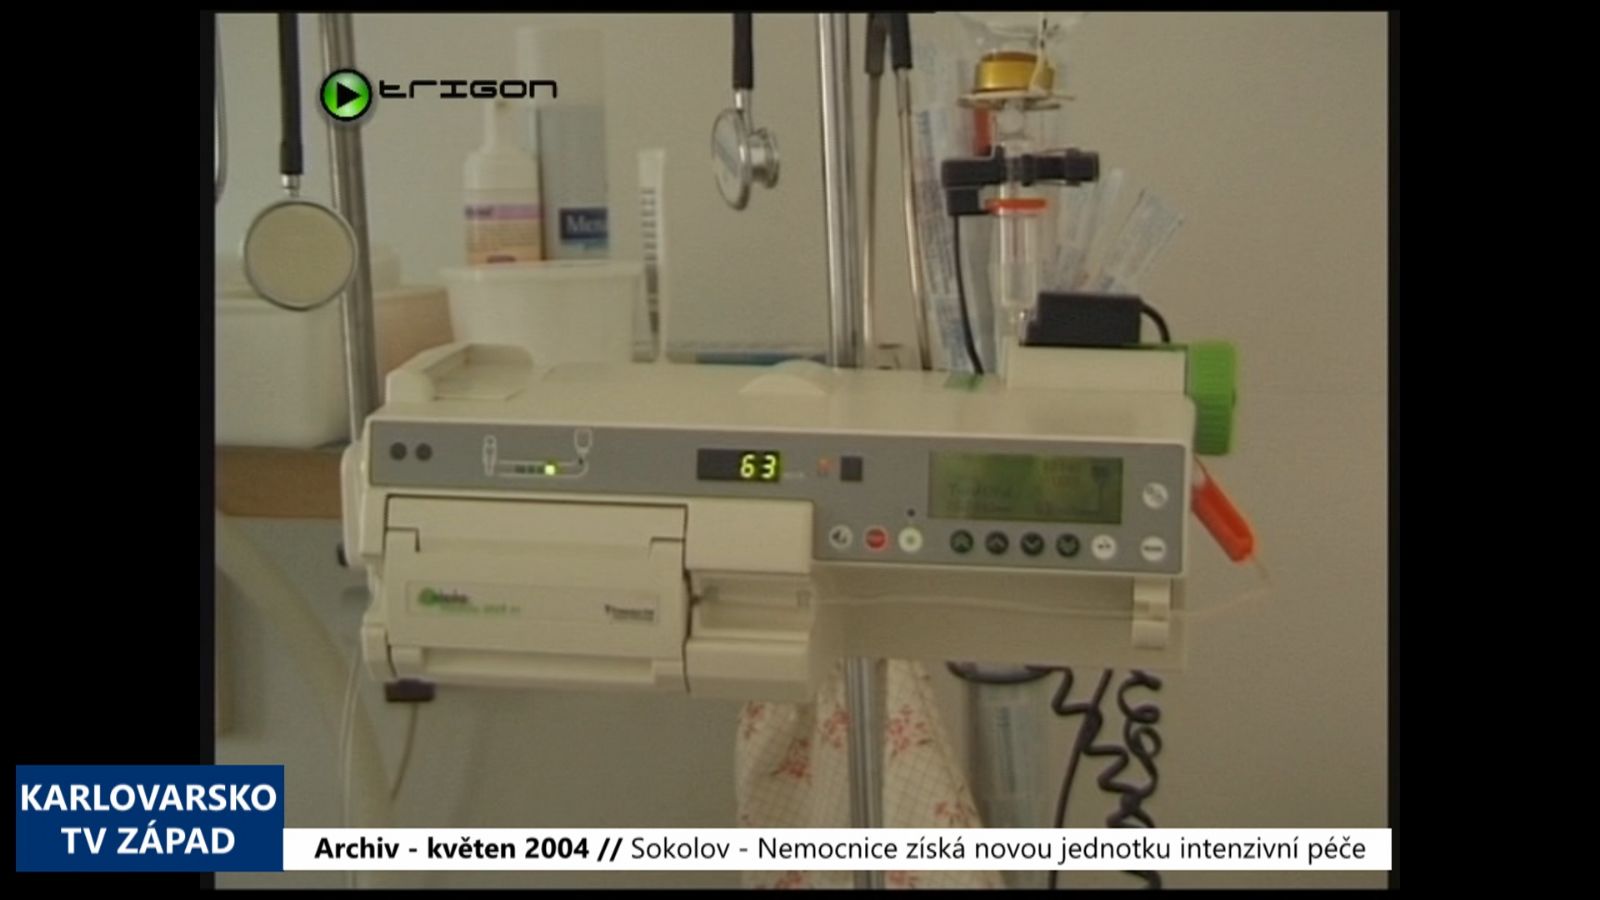 2004 – Sokolov: Nemocnice získá novou jednotku intenzivní péče (TV Západ)